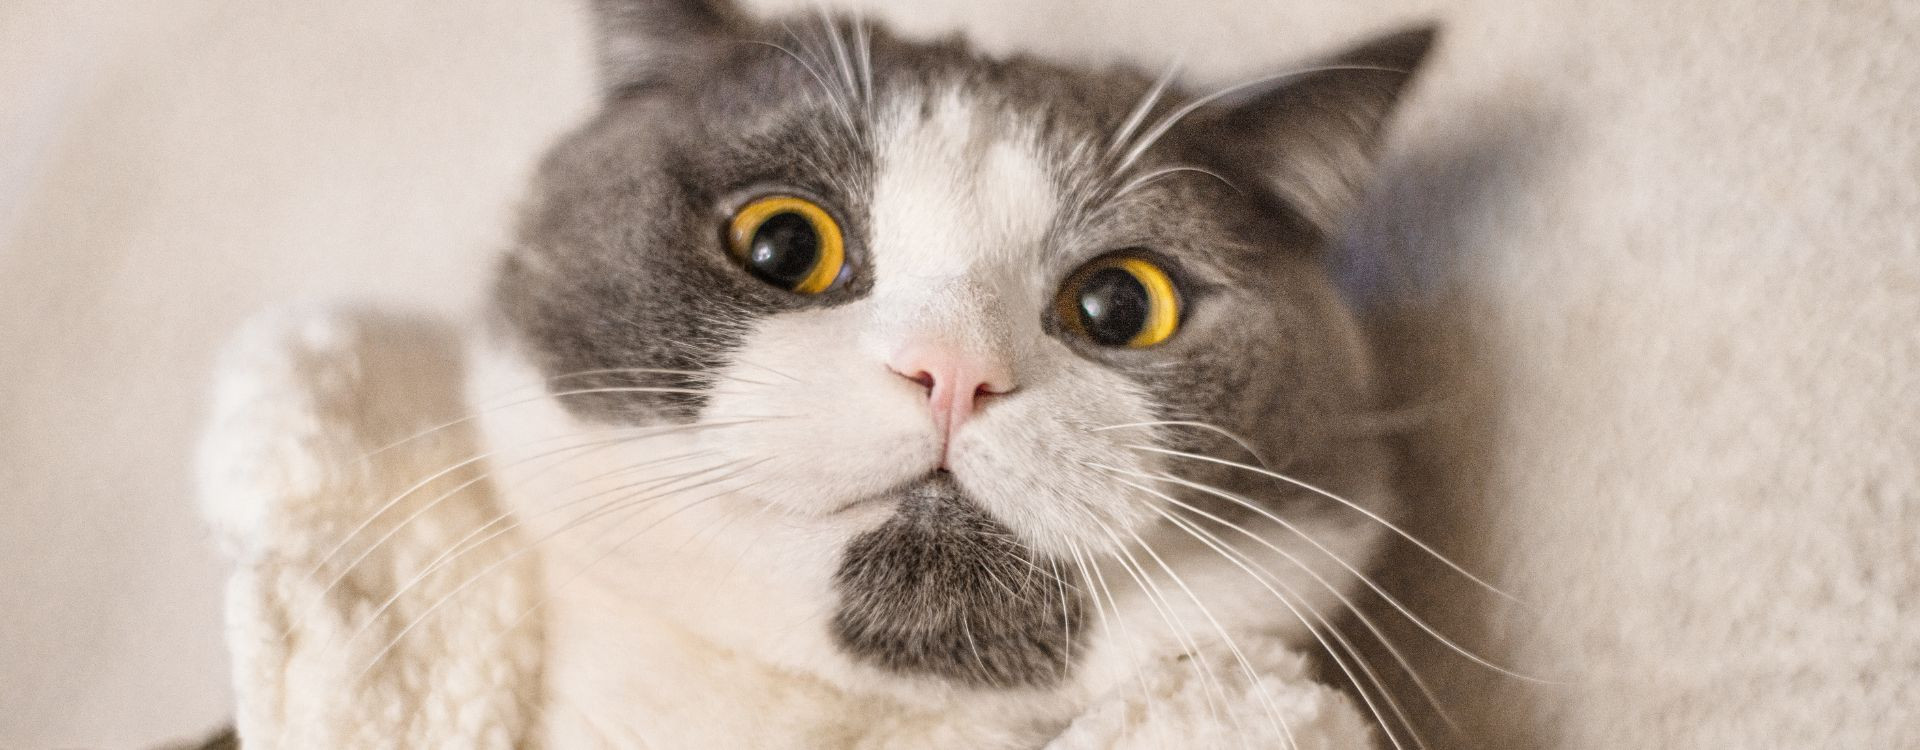 Μόλυνση στα μάτια της γάτας: Συμπτώματα και θεραπείες